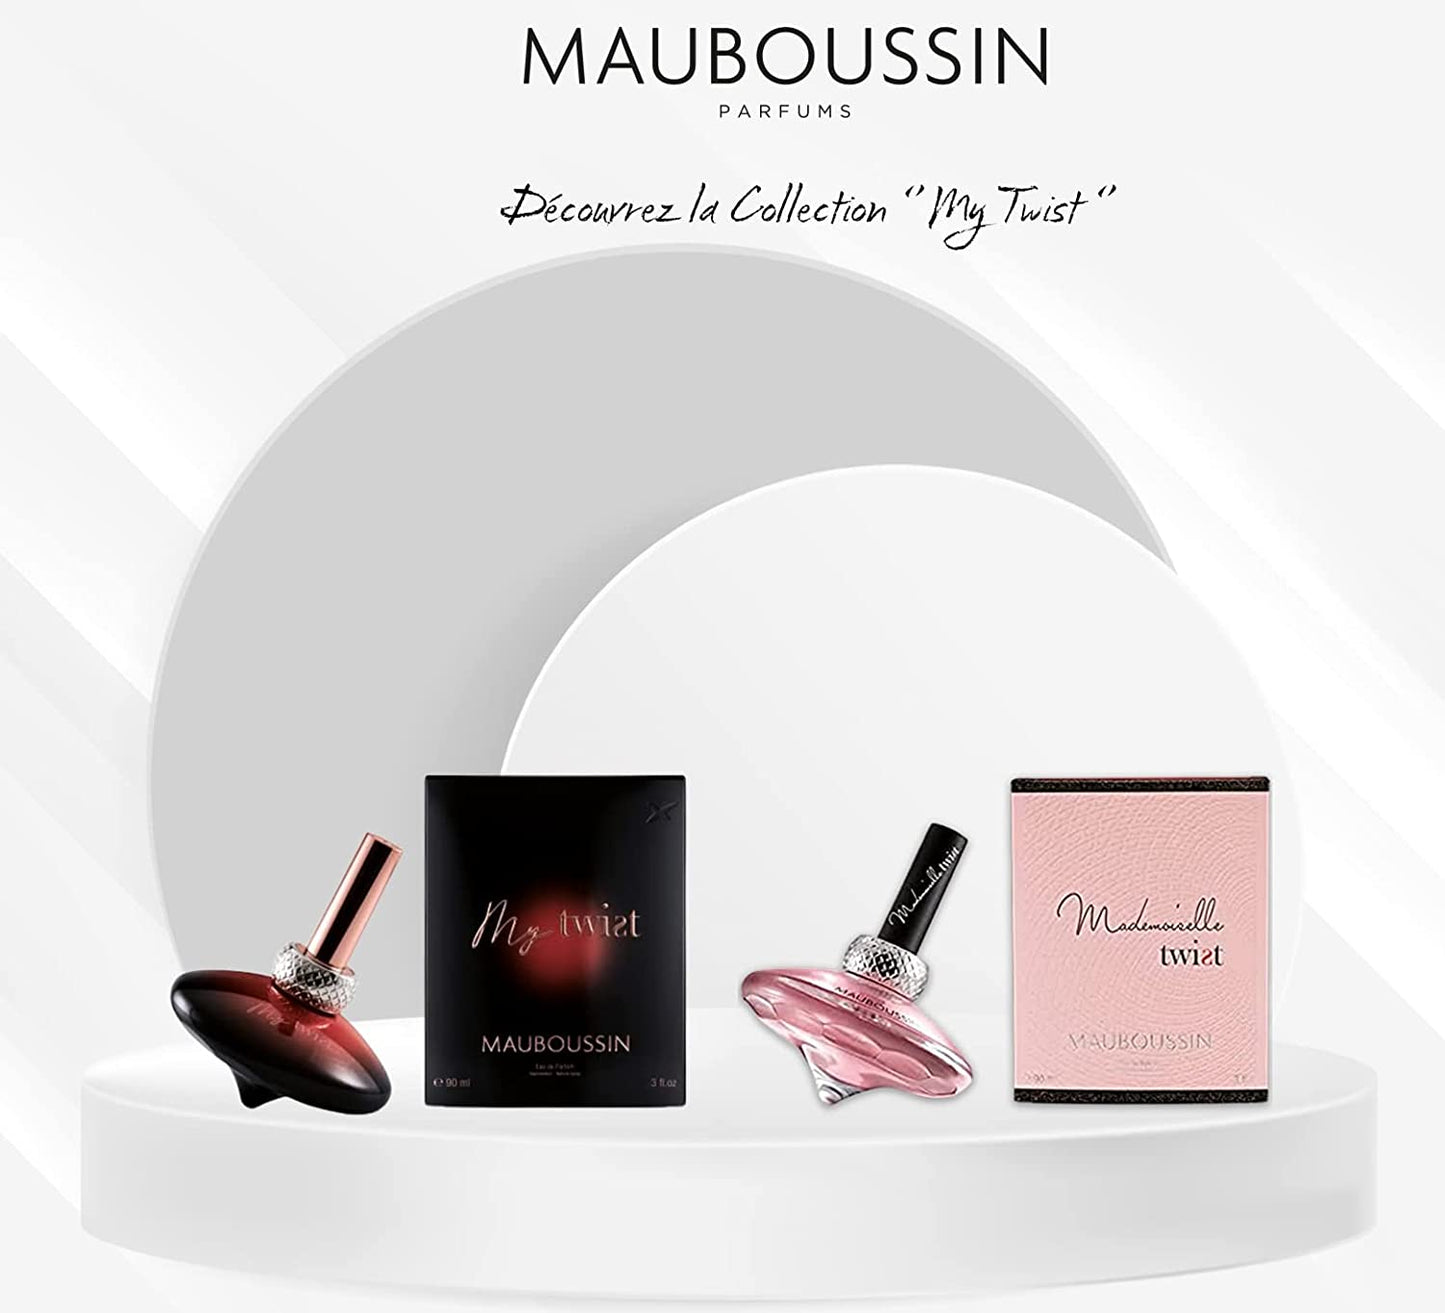 Mauboussin - My Twist 40ml (1.35 Fl Oz) - Eau de Parfum for Women - Floral Scent